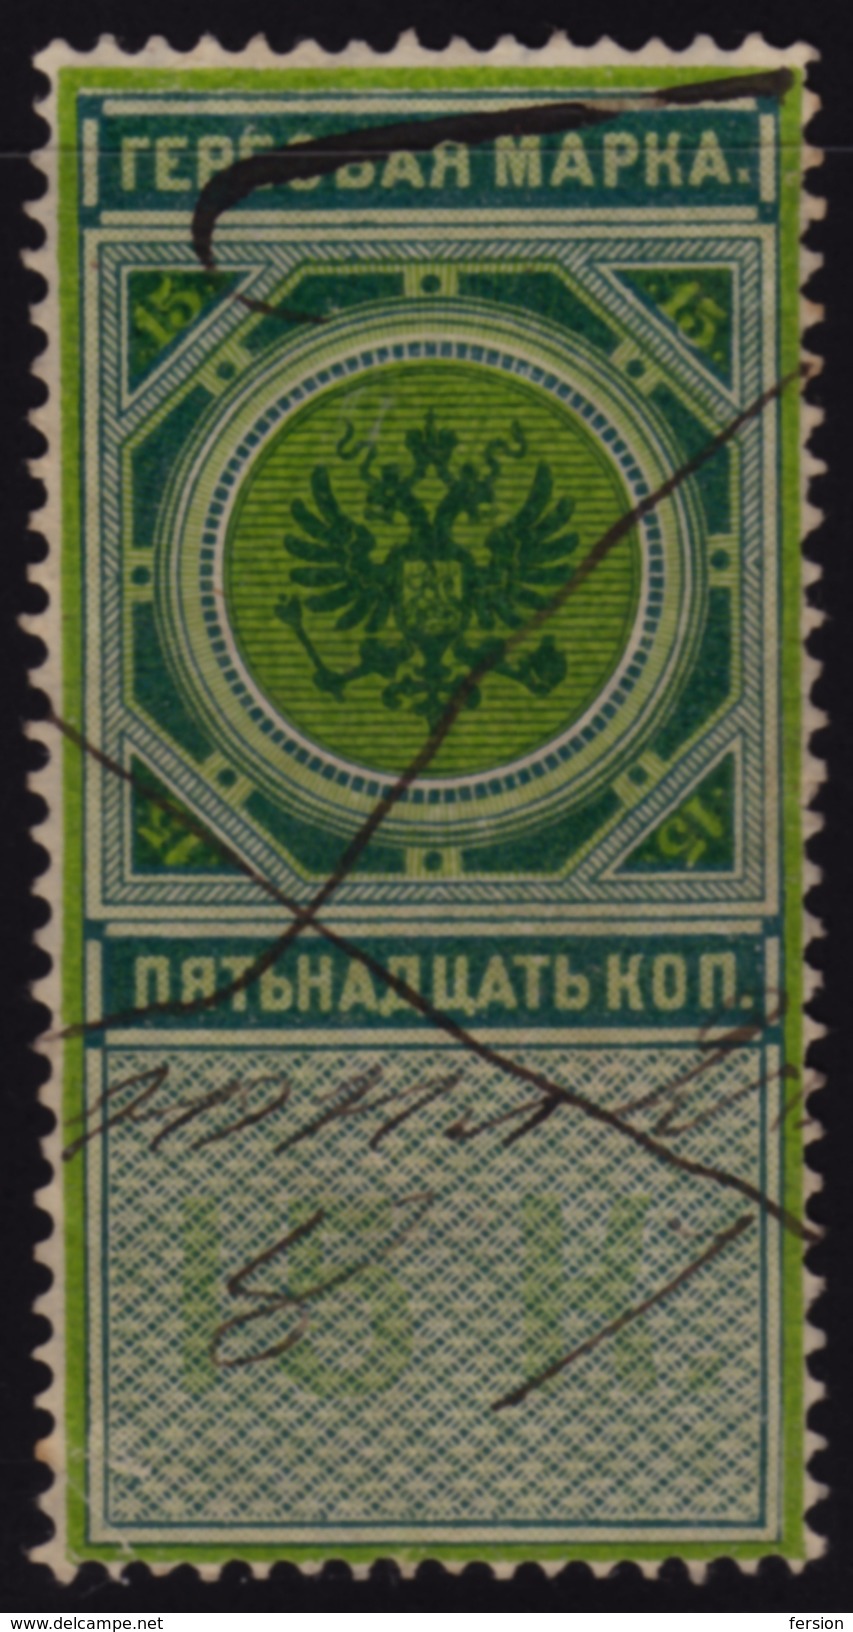 Russia - Revenue Tax Stamp - 15 Kop. - Fiscali